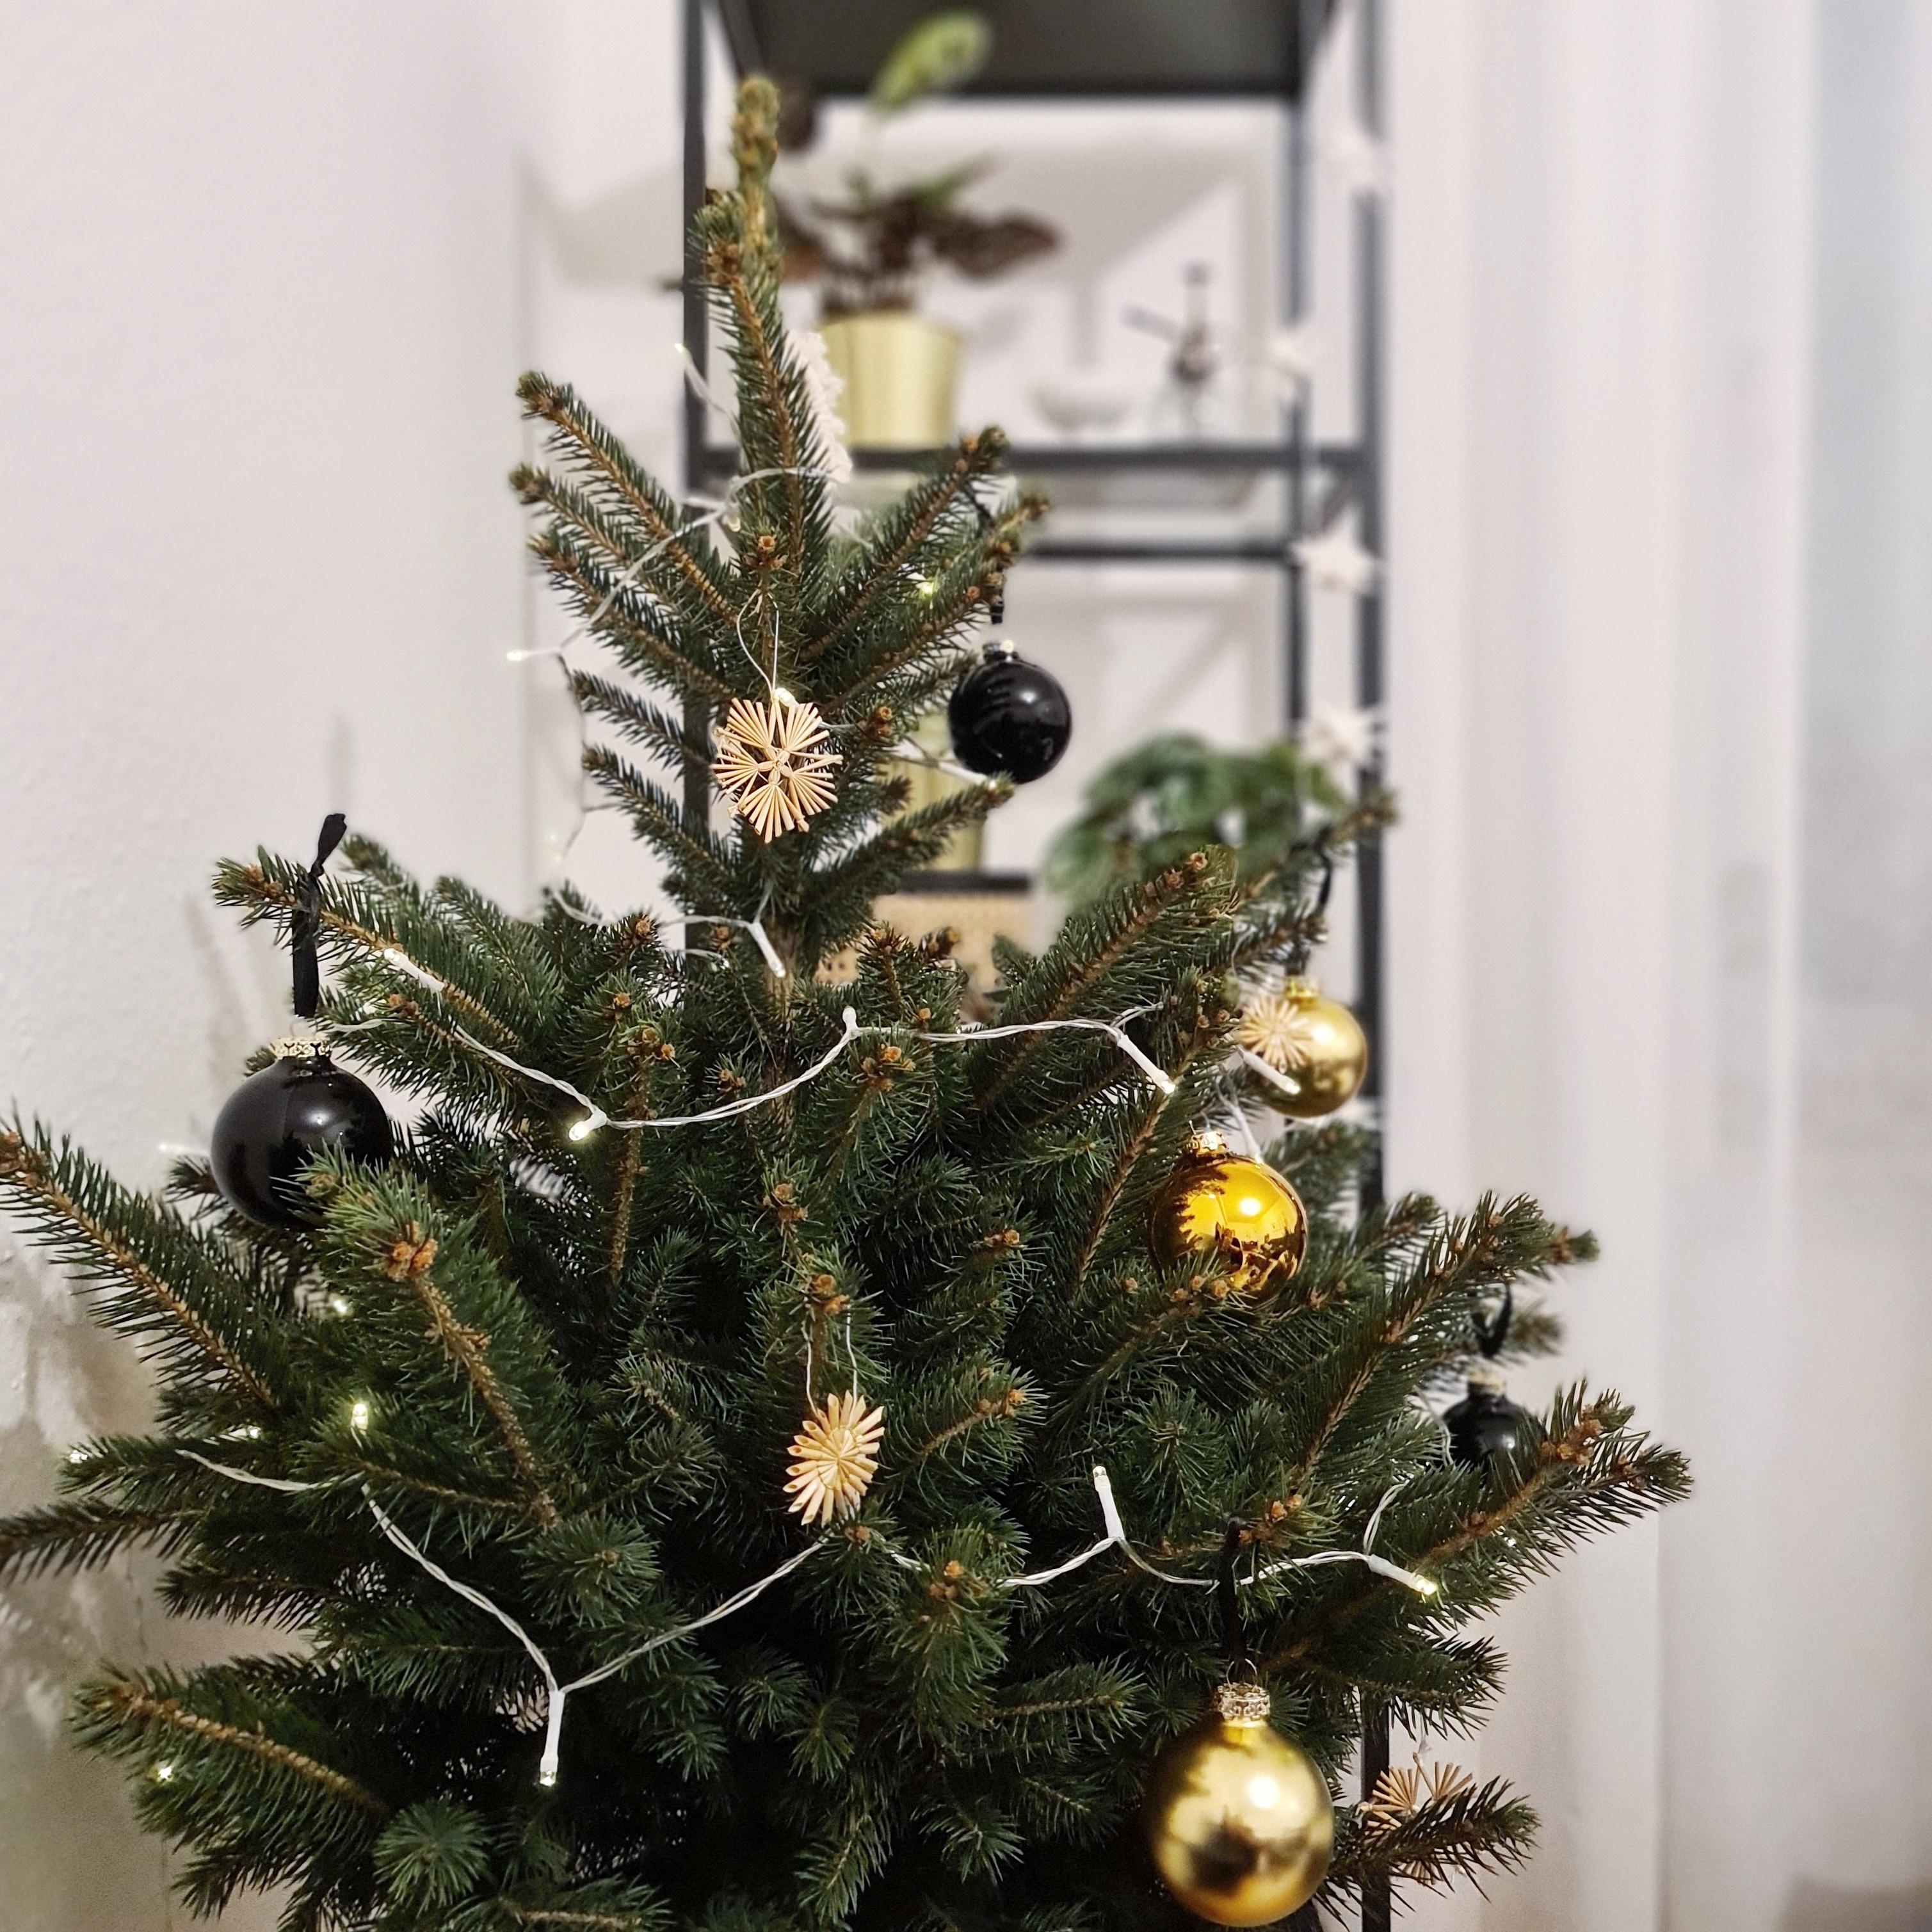 mein kleiner baum 🎄🖤
#tannenbaum #schwarz #gold #details #scandistyle #weihnachten #weihnachtsdeko #gemütlichkeit